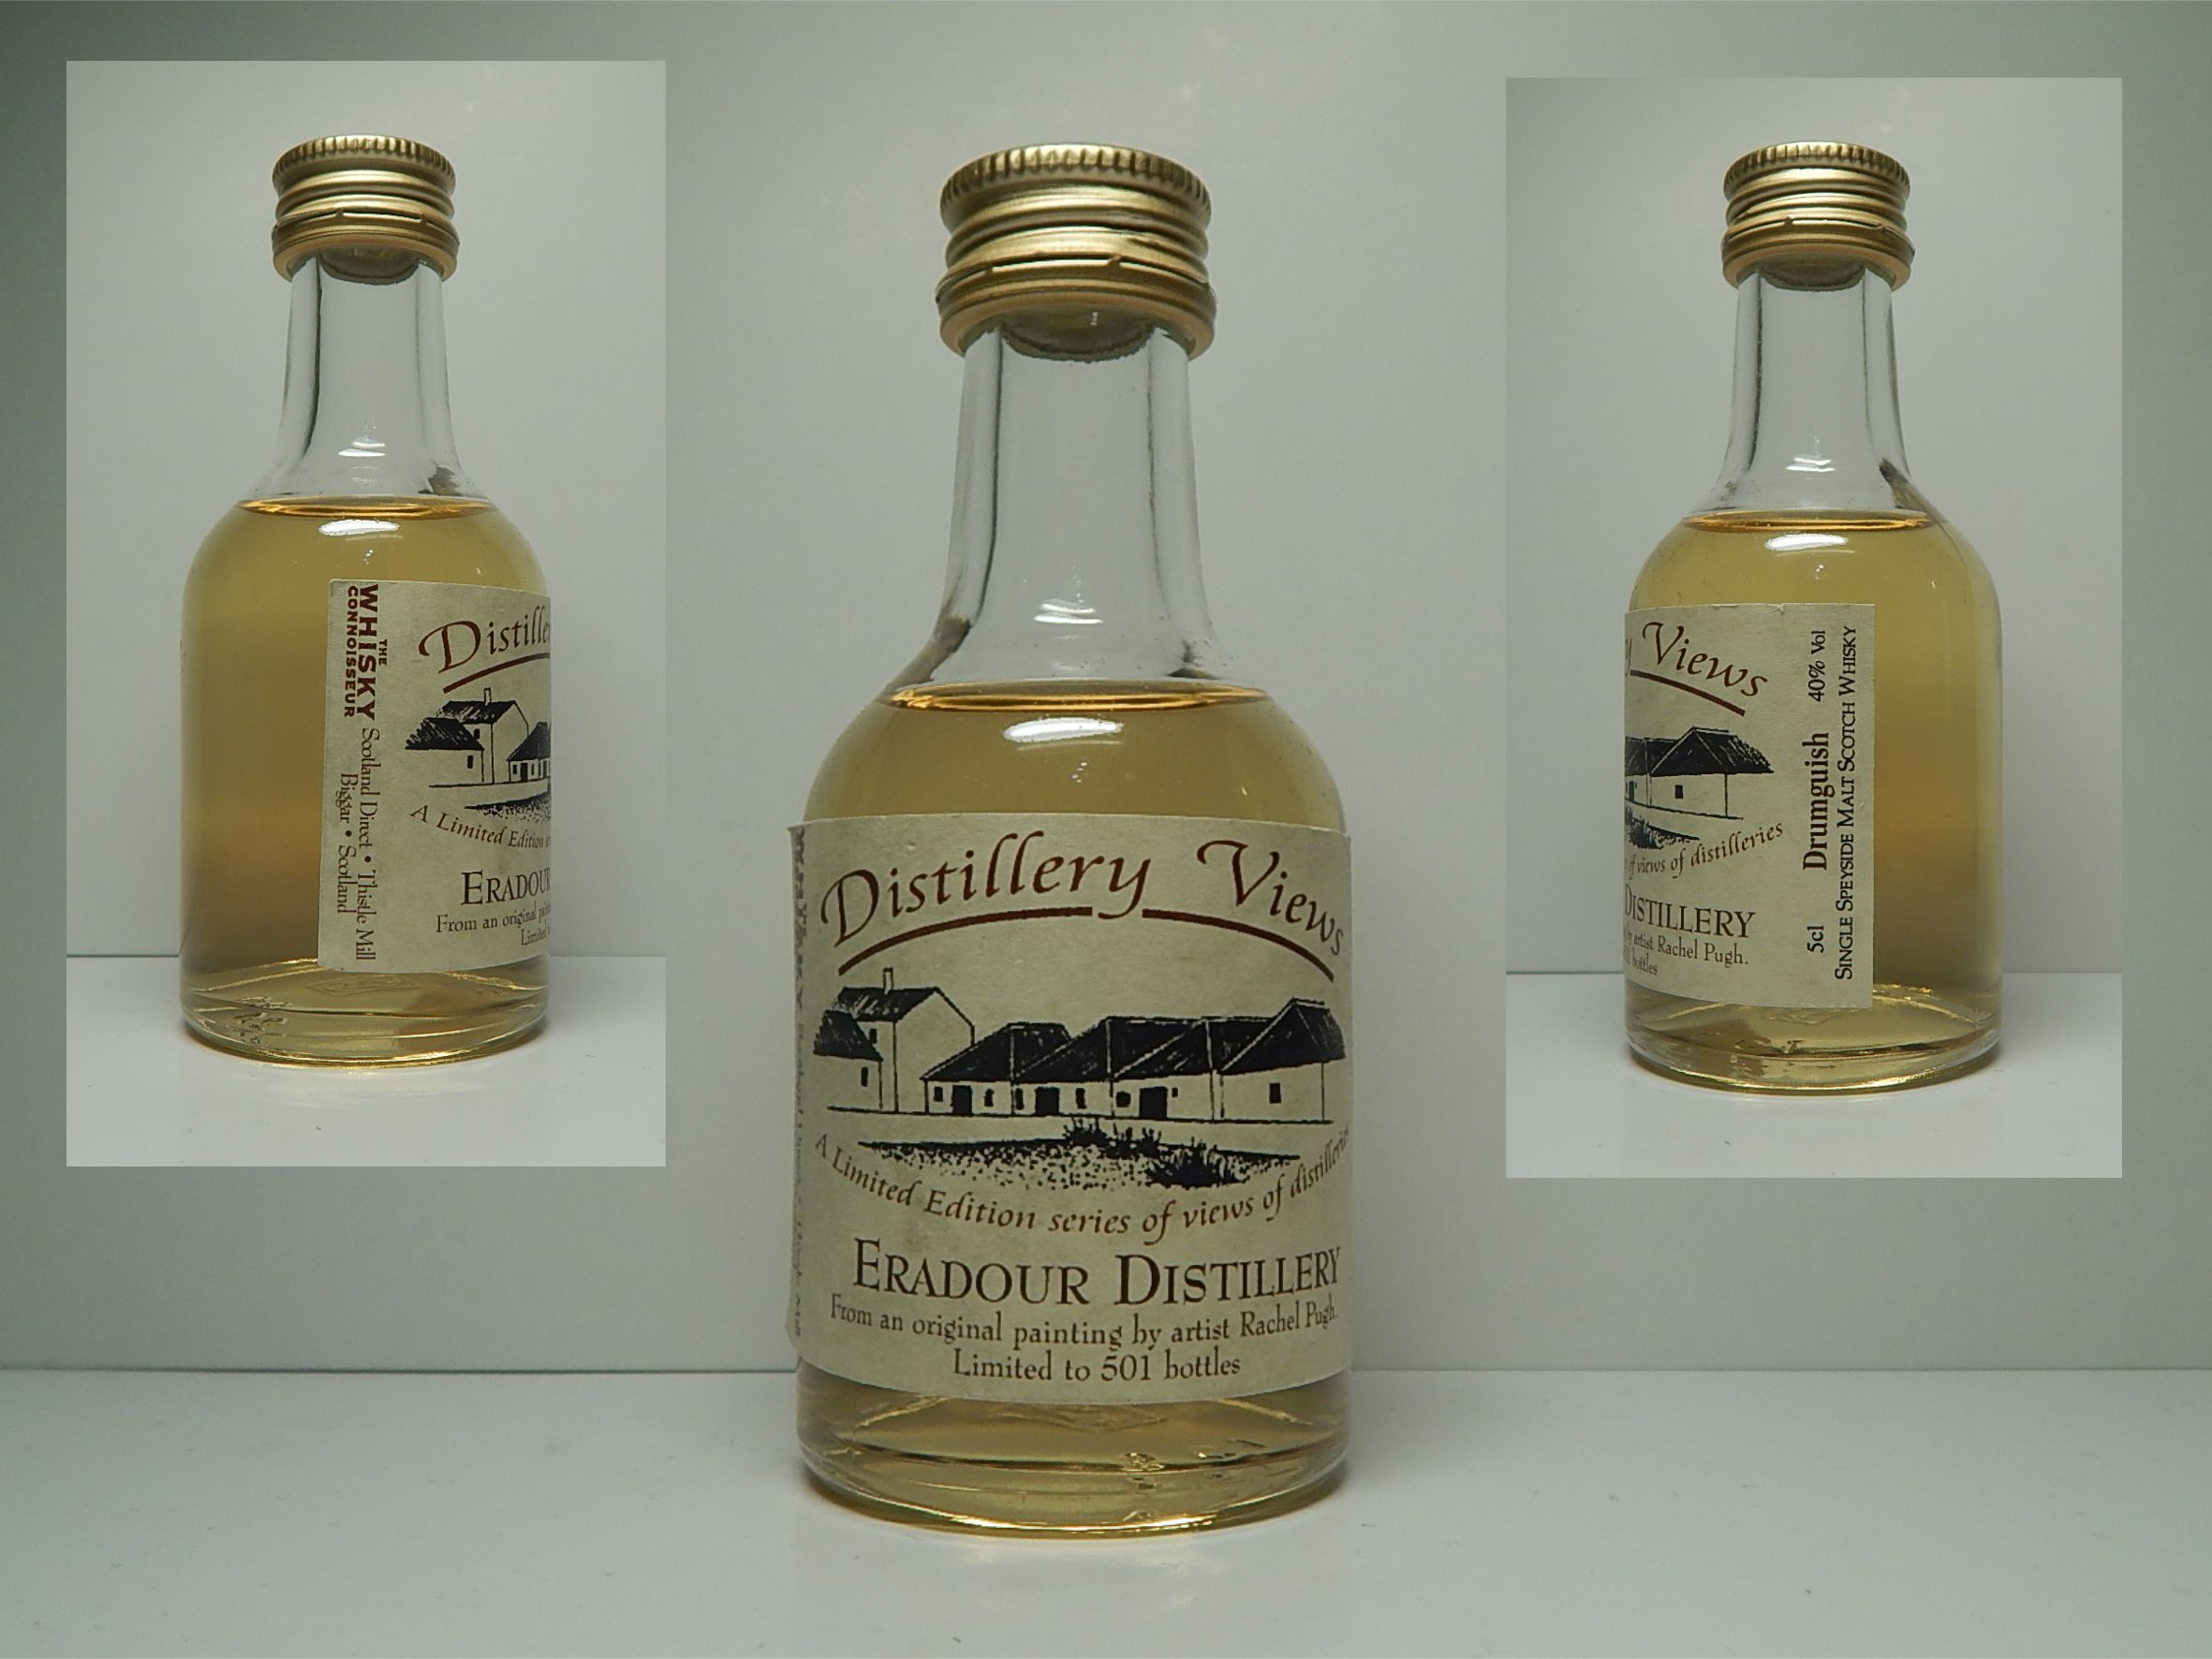 Distillery Views DRUMGUISH EDRADOUR SSMSW " Whisky Connoisseur " 5cl 40%Vol 1/501 bottles